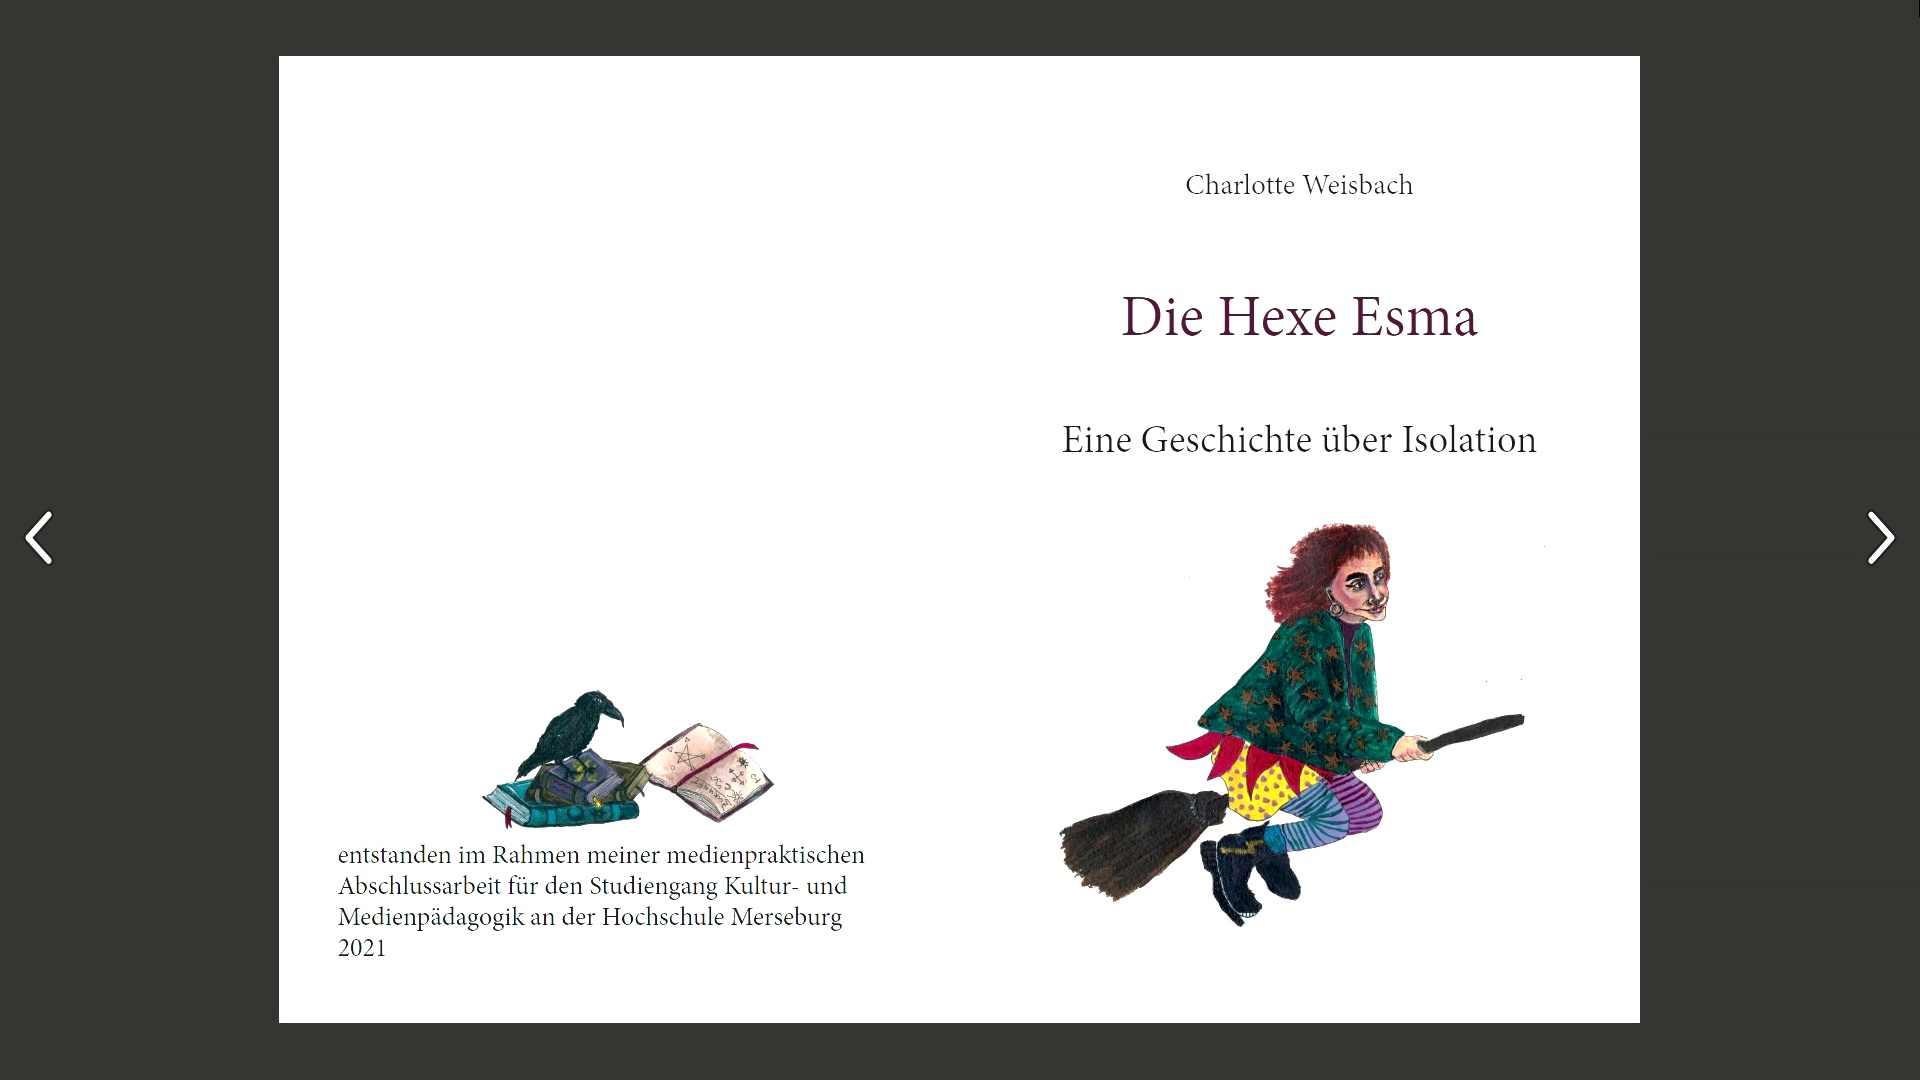 Singen, Malen, Klatschen - "Die Hexe Esma - Eine Geschichte über Isolation" (Charlotte Weisbach)